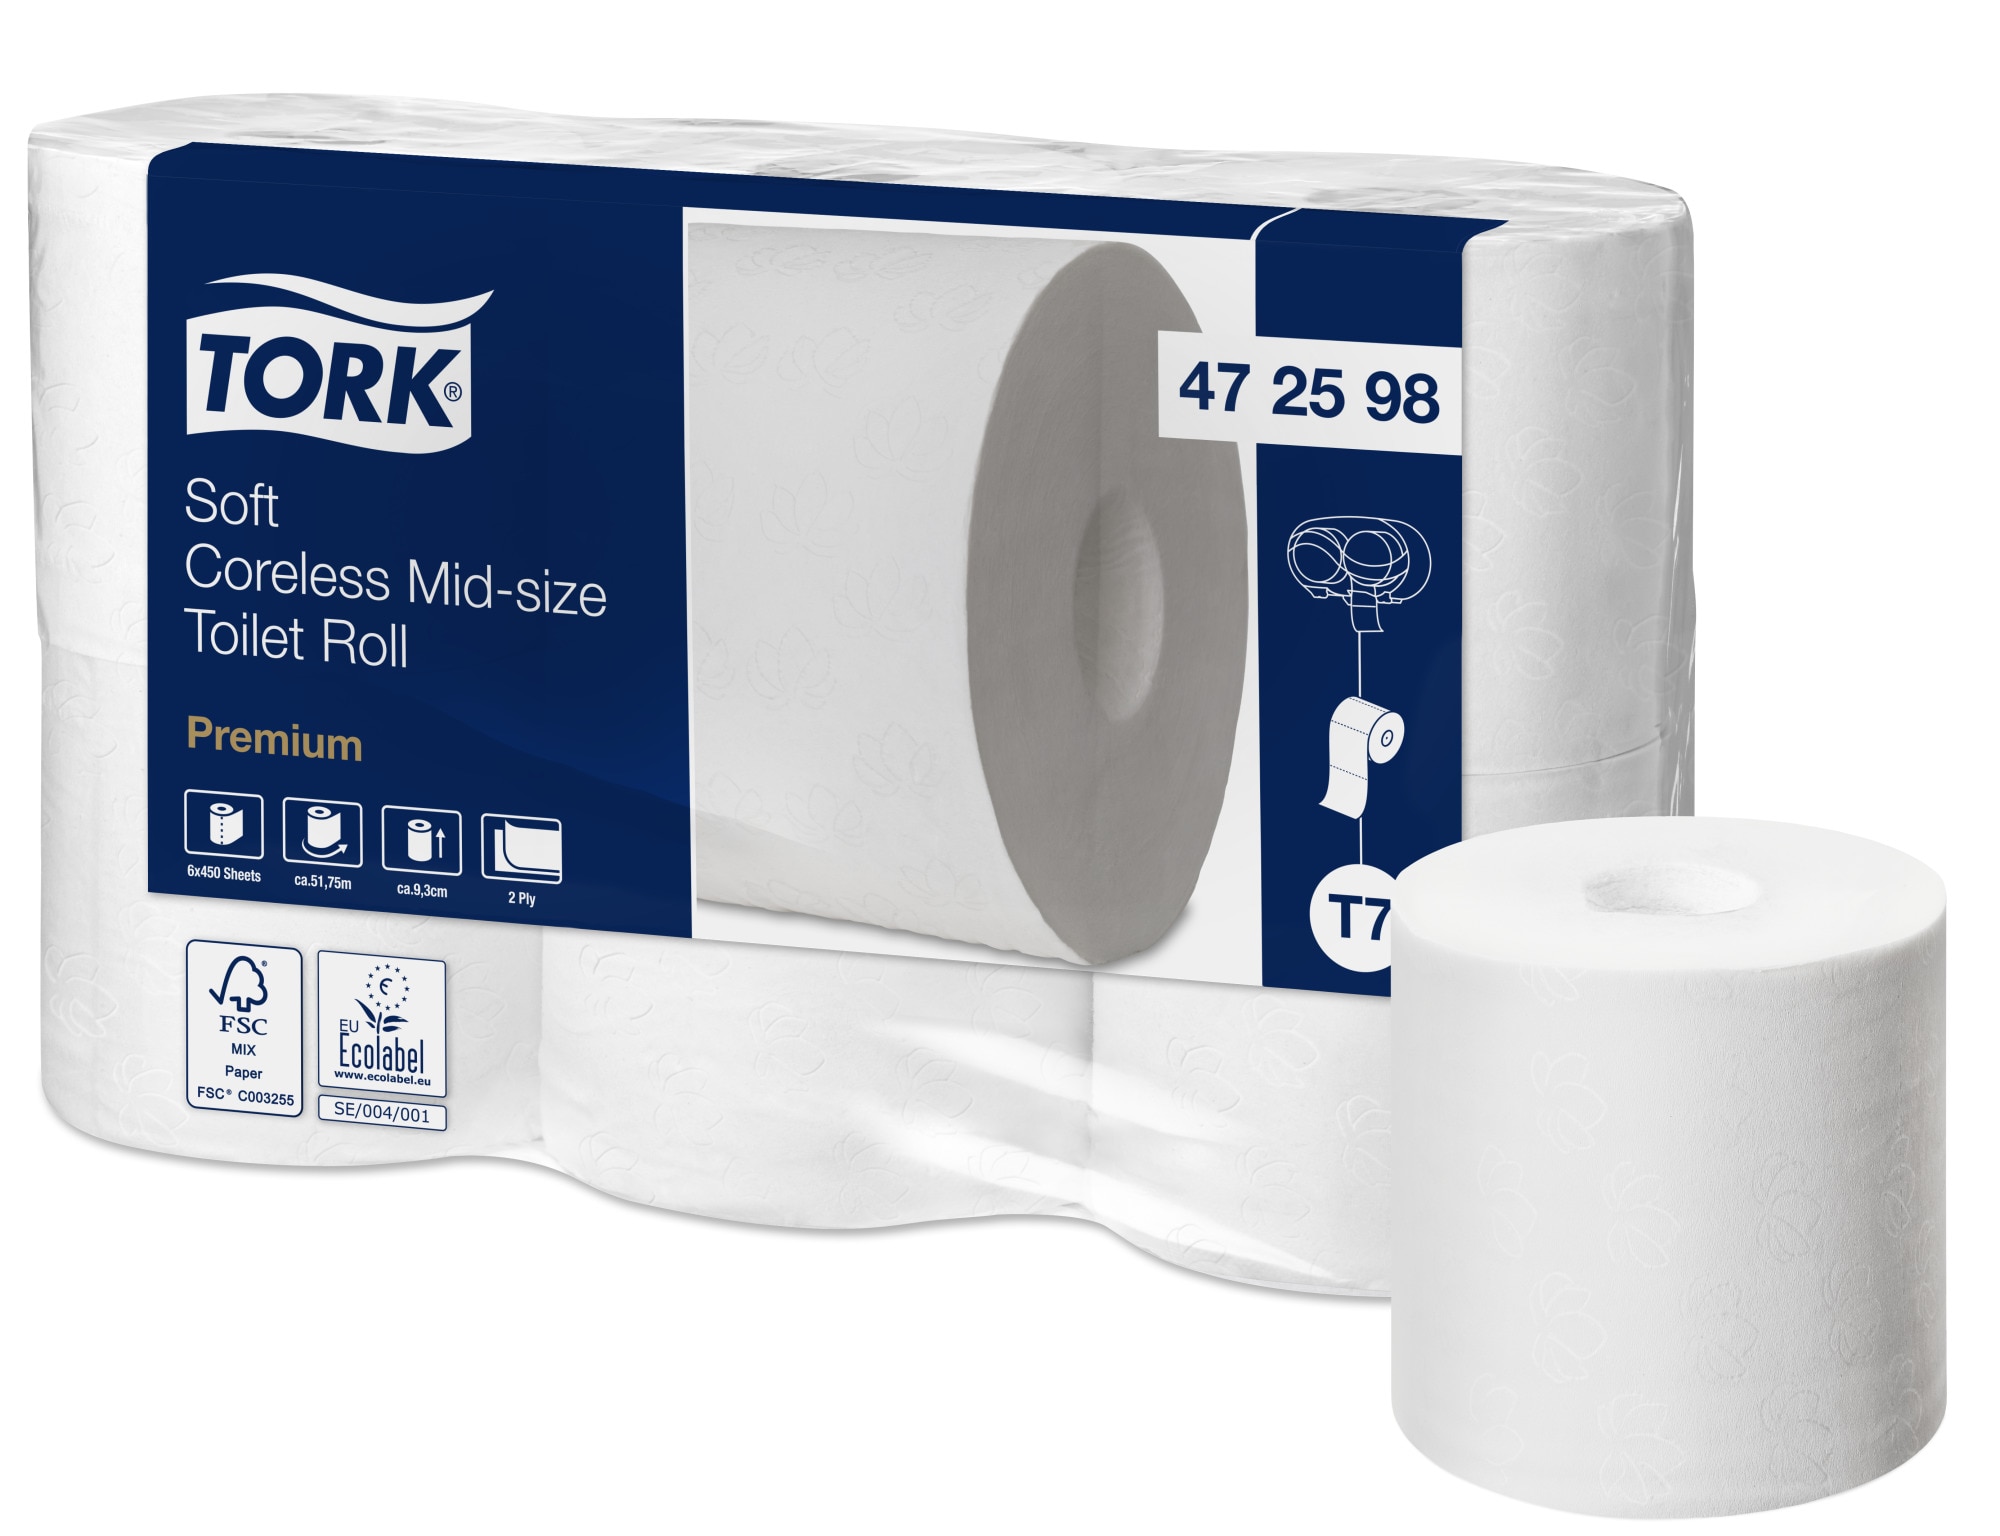 Tork Double Roll Dispenser For Coreless Toilet Paper Midi Stainless Steel